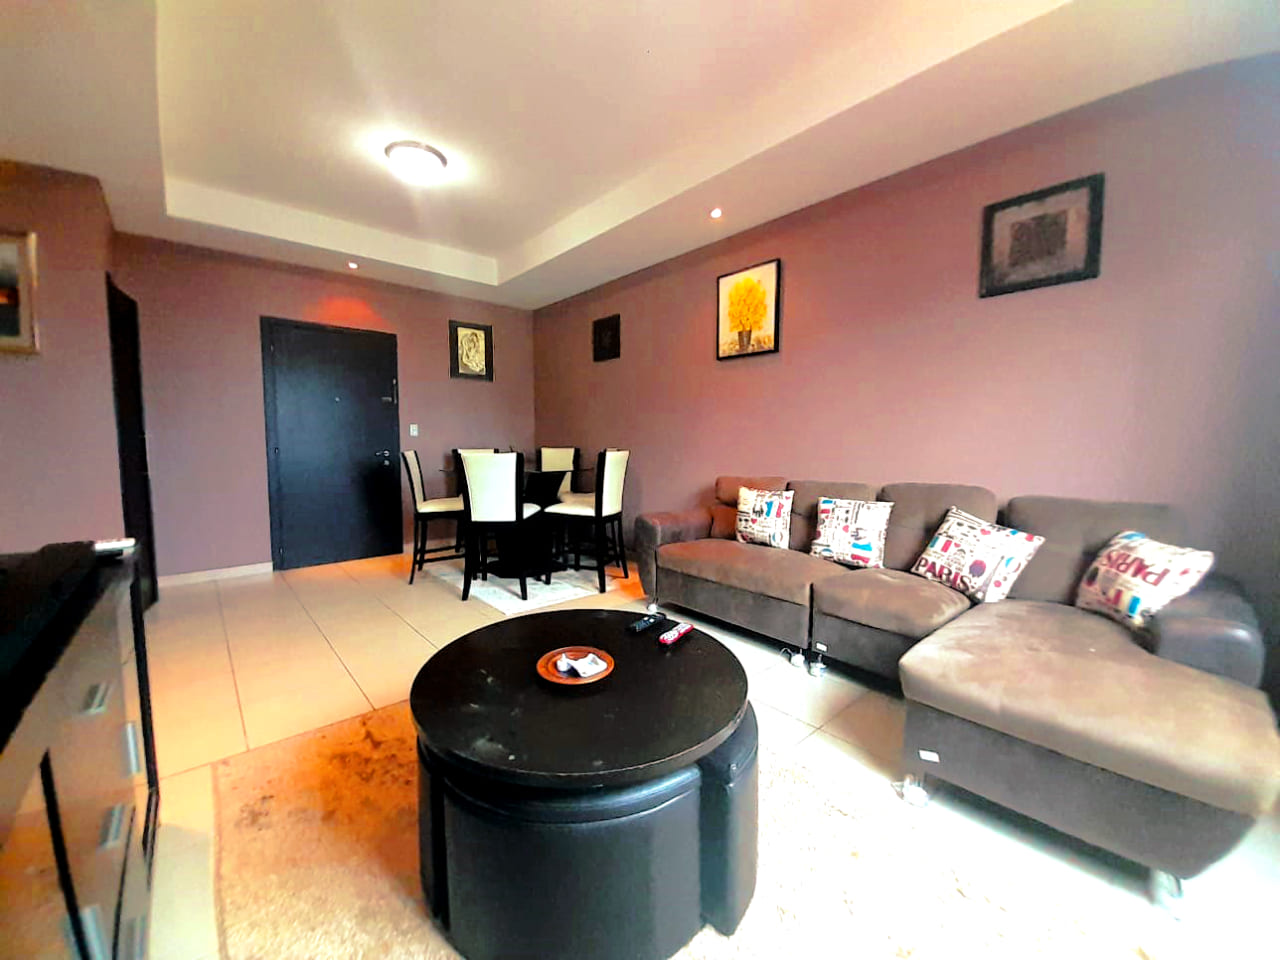 Amplia sala amueblada con sofas color cafe mas muebles de color negro.